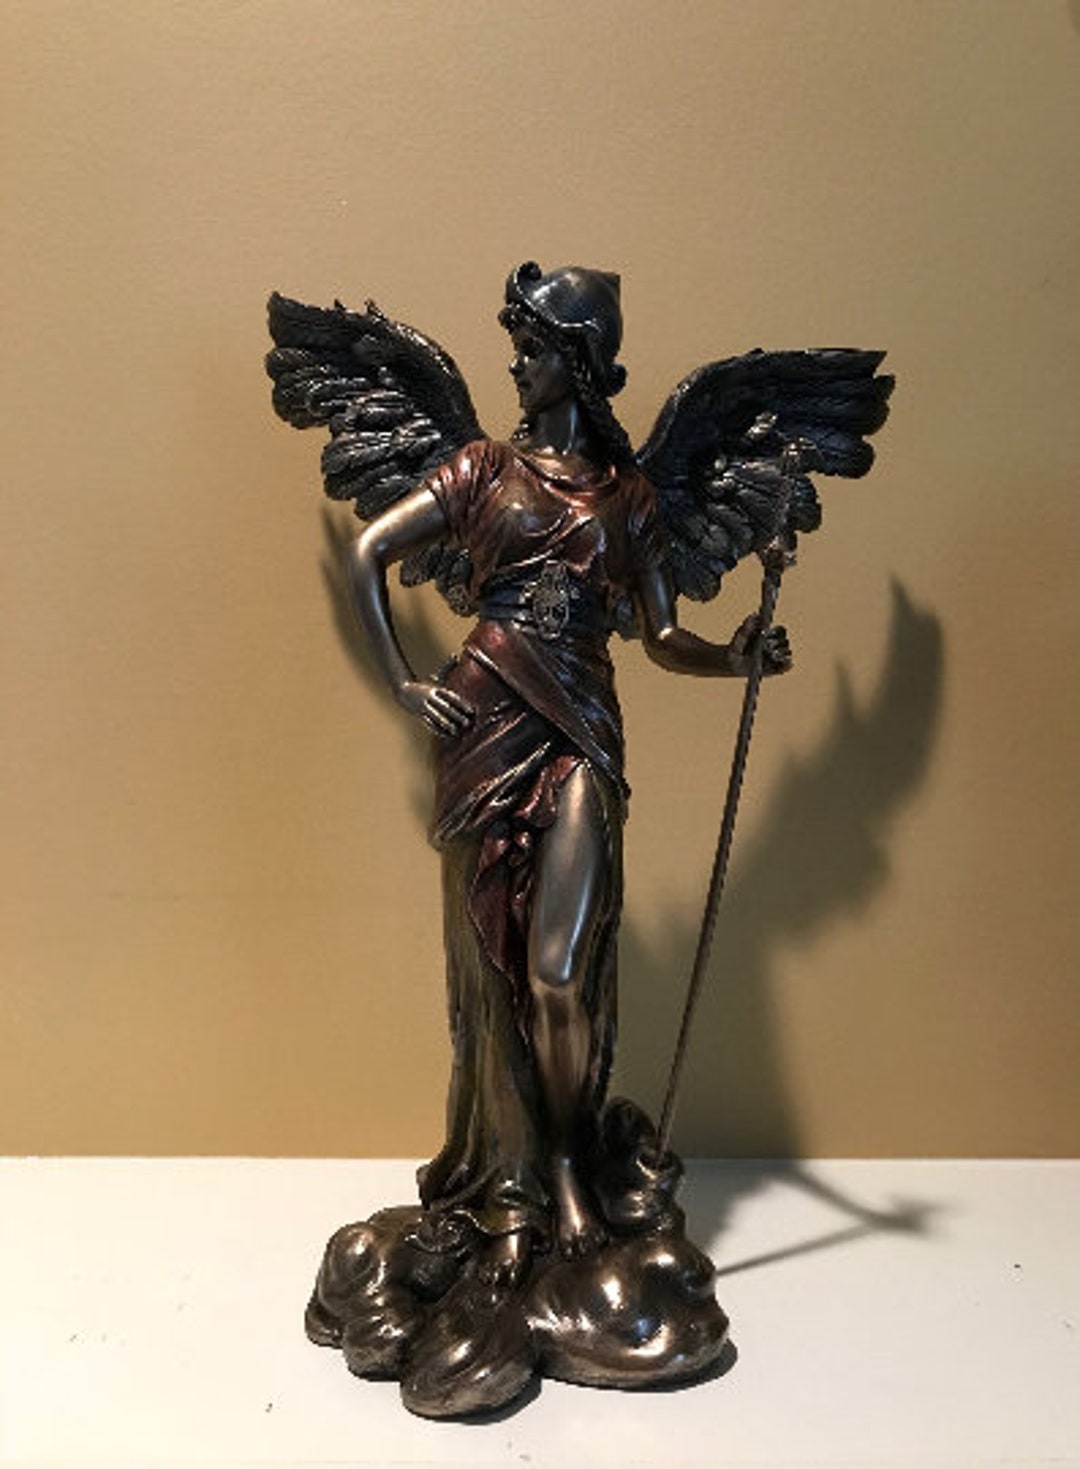 Statue Ange Gardien en bronze 65 cm POUR EXTÉRIEUR